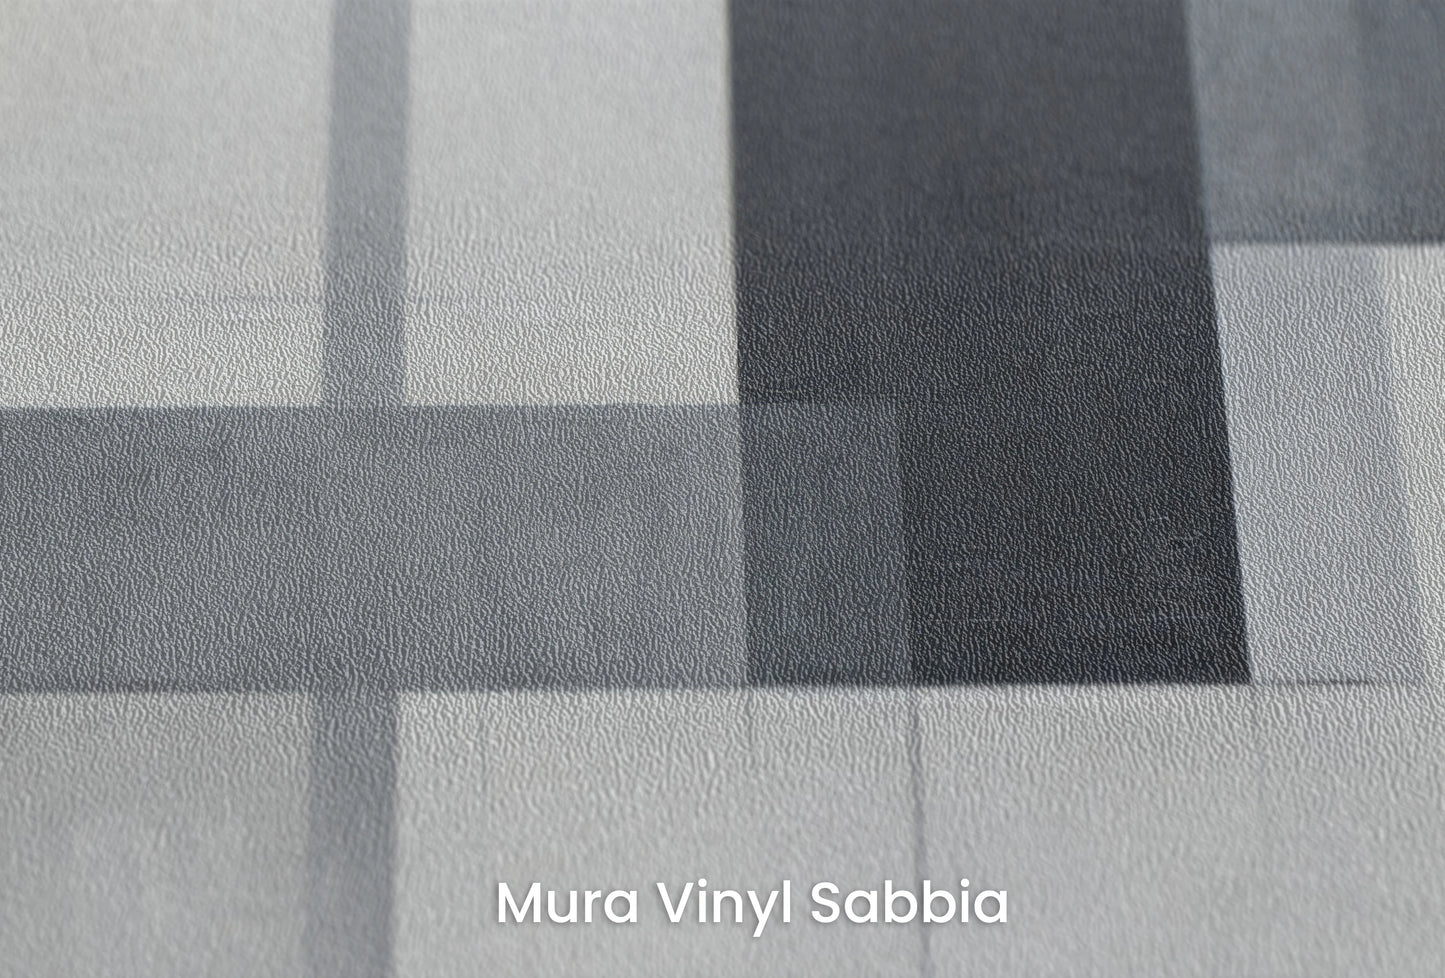 Zbliżenie na artystyczną fototapetę o nazwie Abstract Intersection na podłożu Mura Vinyl Sabbia struktura grubego ziarna piasku.